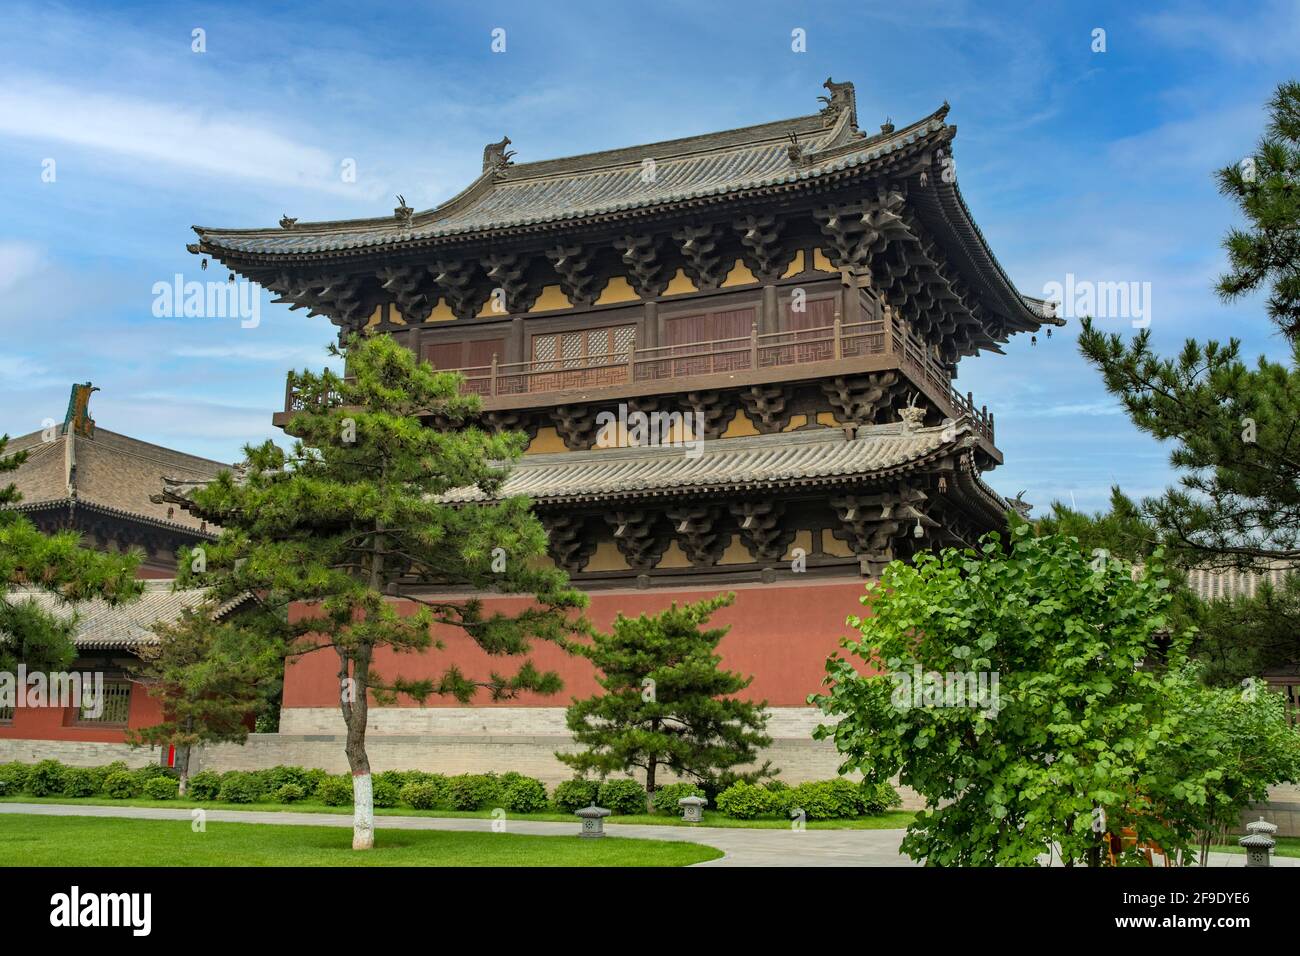 Hall of Universal Brightness, Huayan Monastery, Datong, Shanxi, China Stock Photo